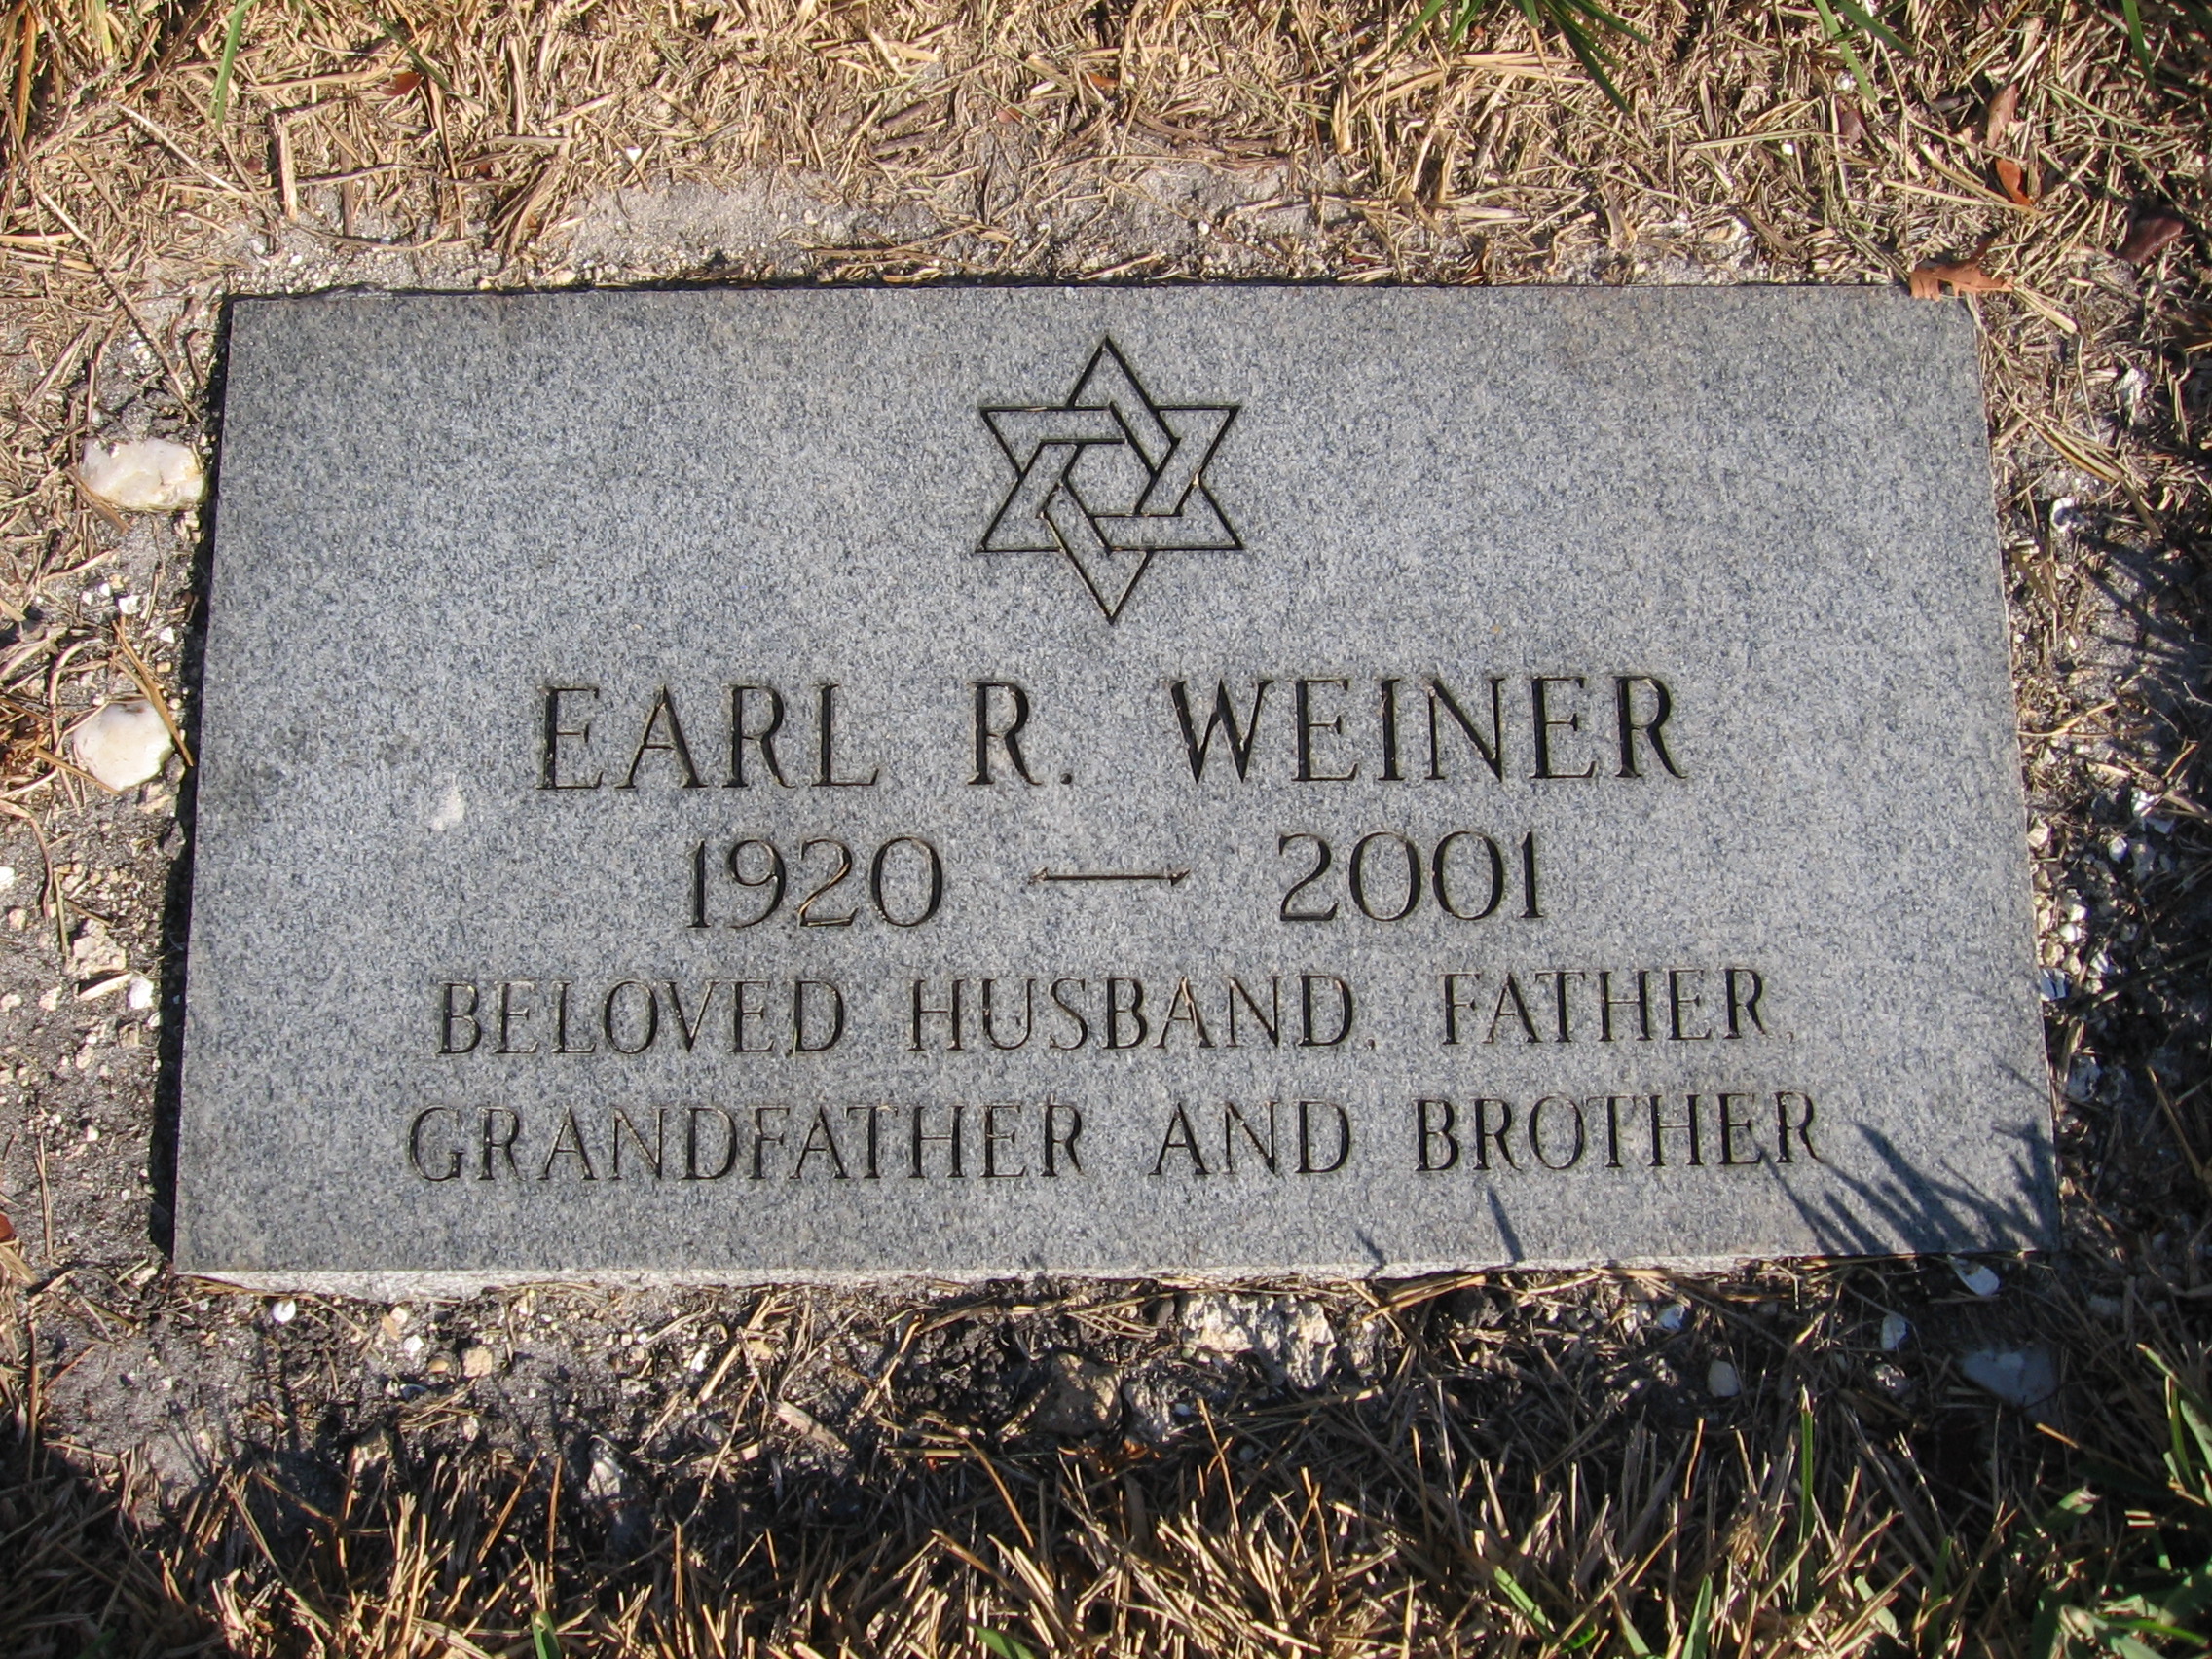 Earl R Weiner